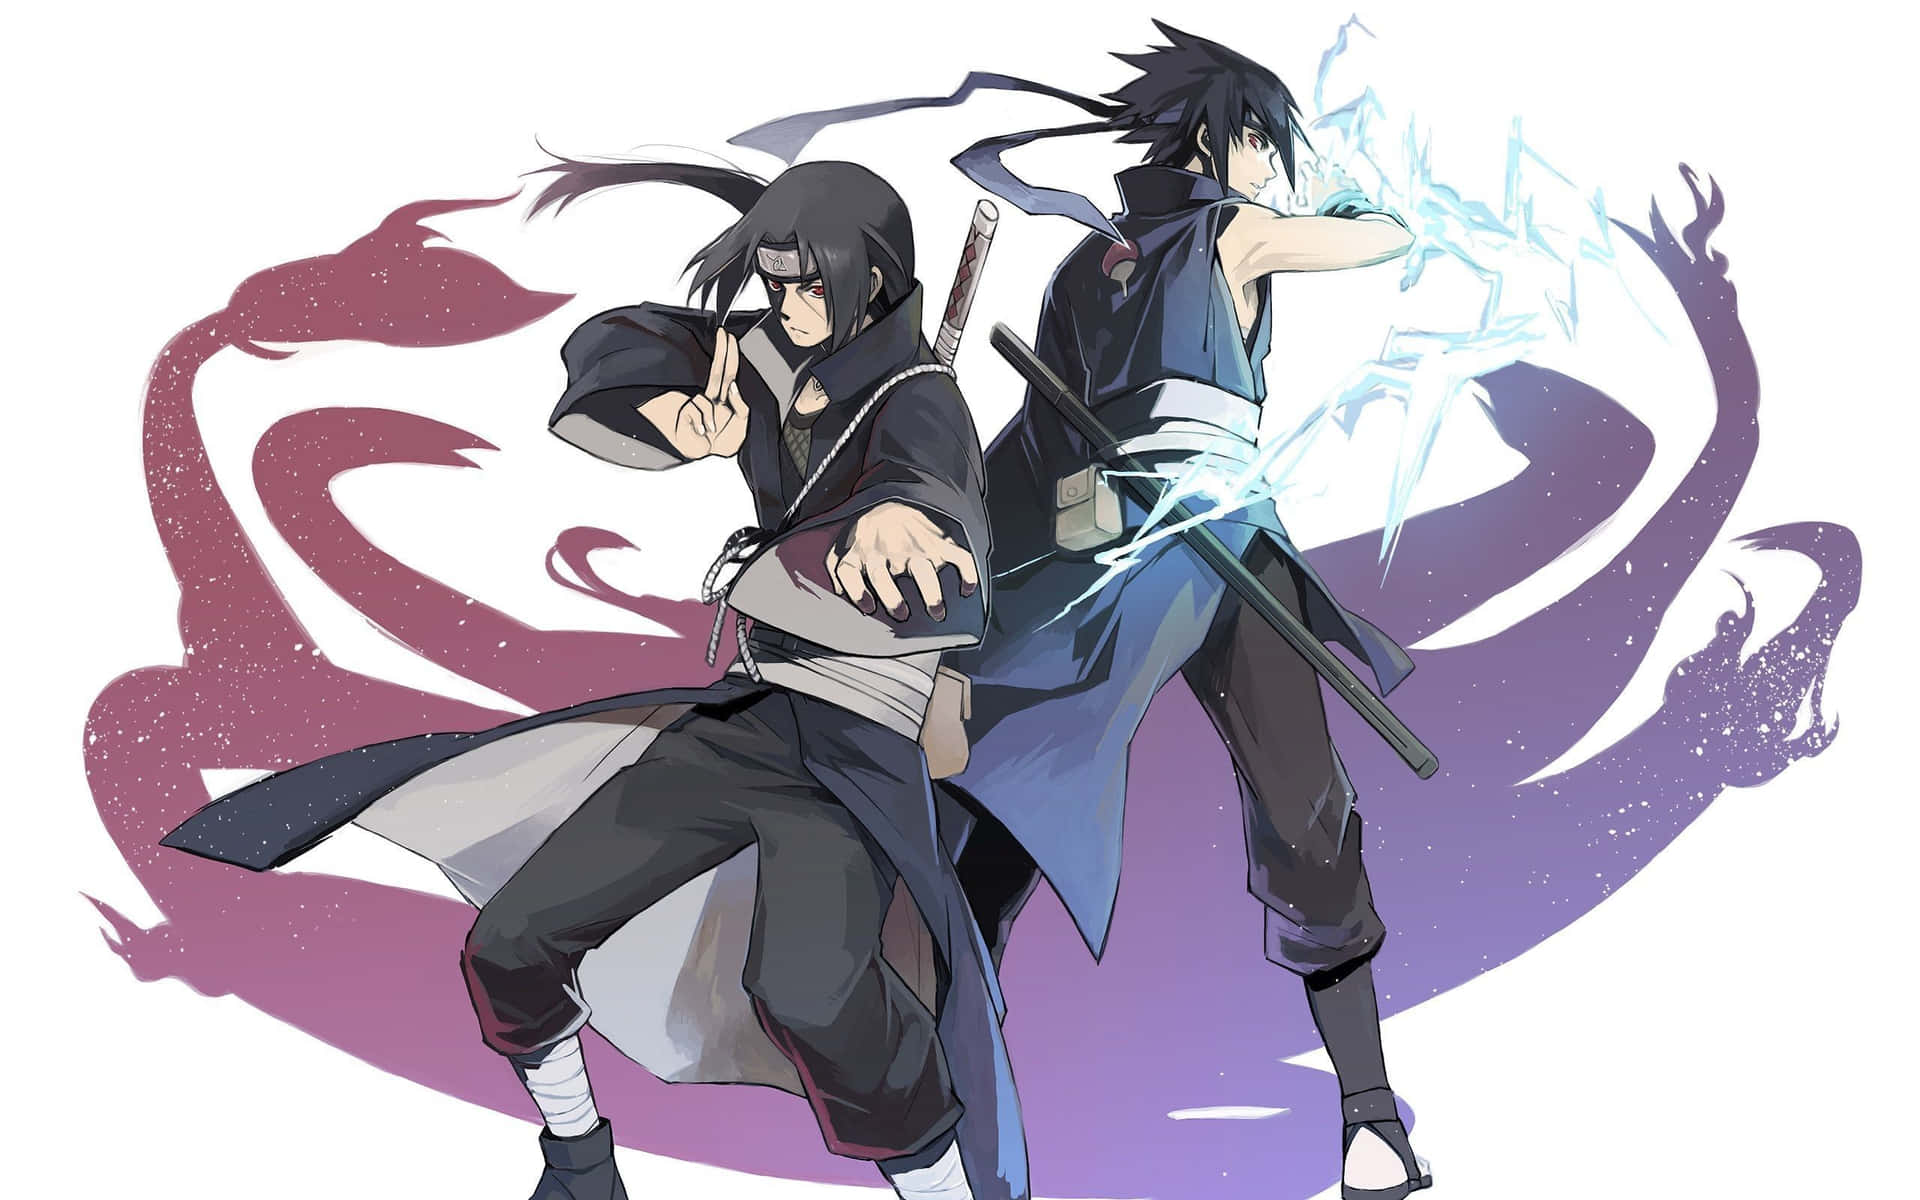 The costumes of Sasuke Uchiha | Naruto and Naruto cosplay